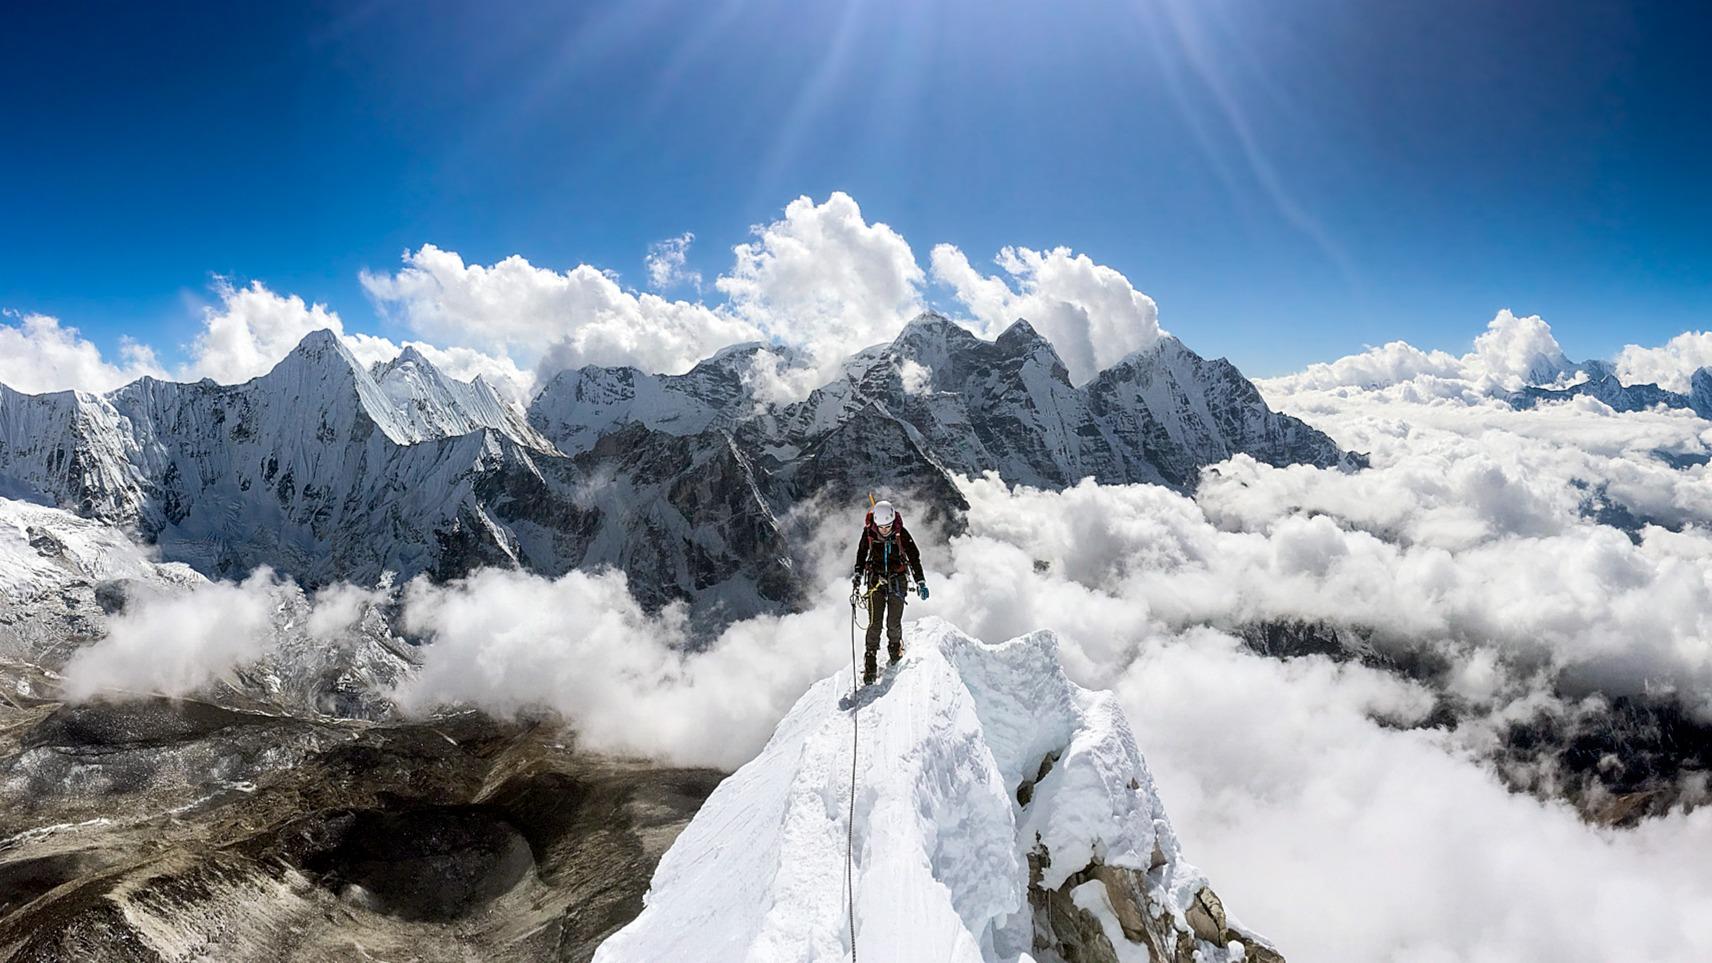 Ama Dablam 6,812 m Expedition